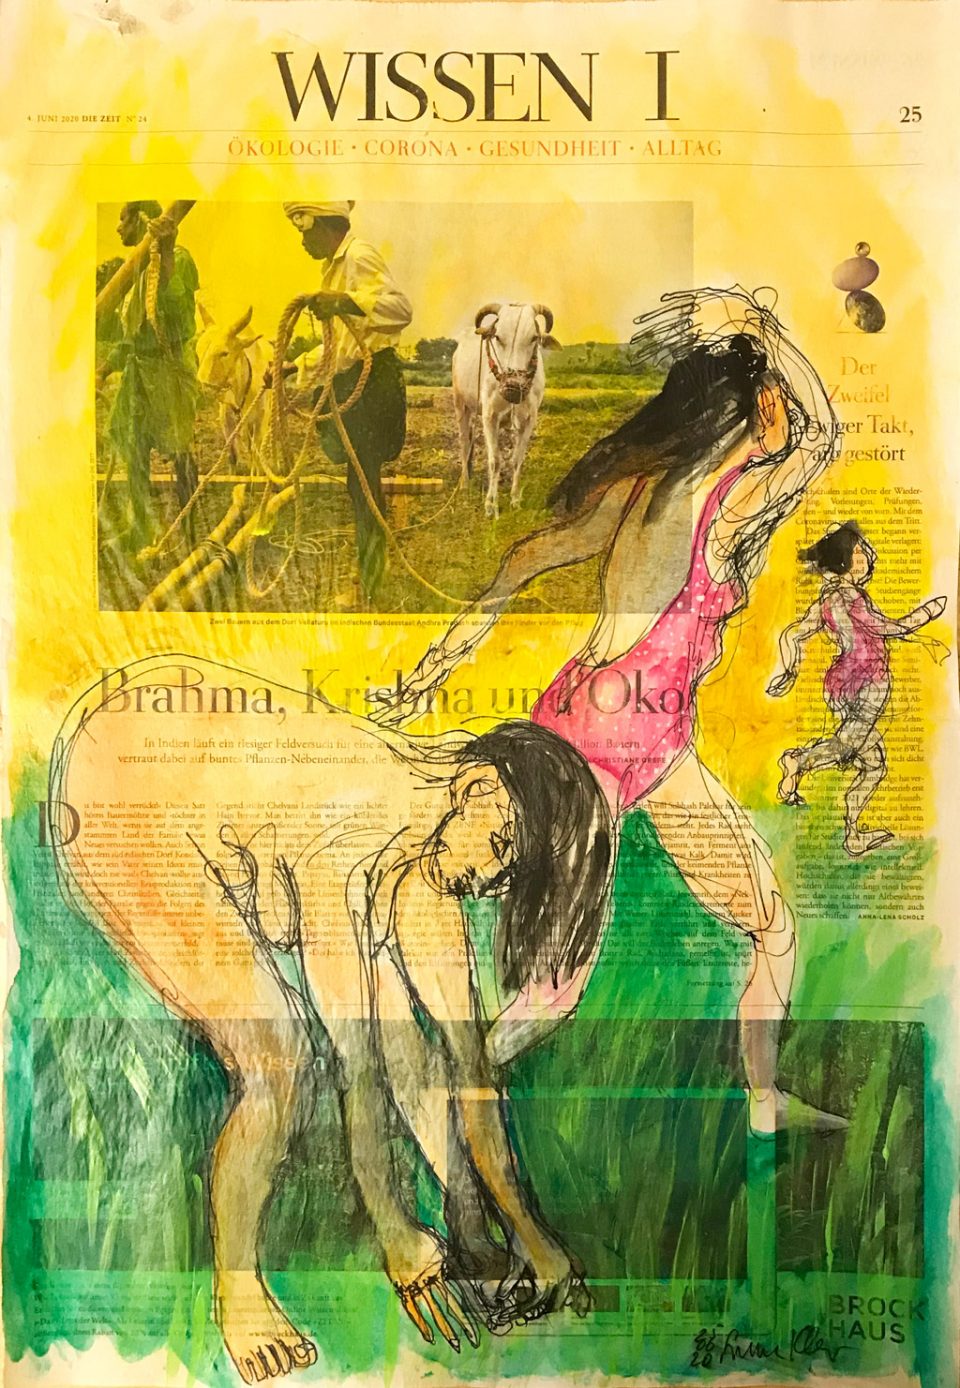 Brahma Krishna Öko – Figürliche Illustration auf ganzer Zeitungsseite.